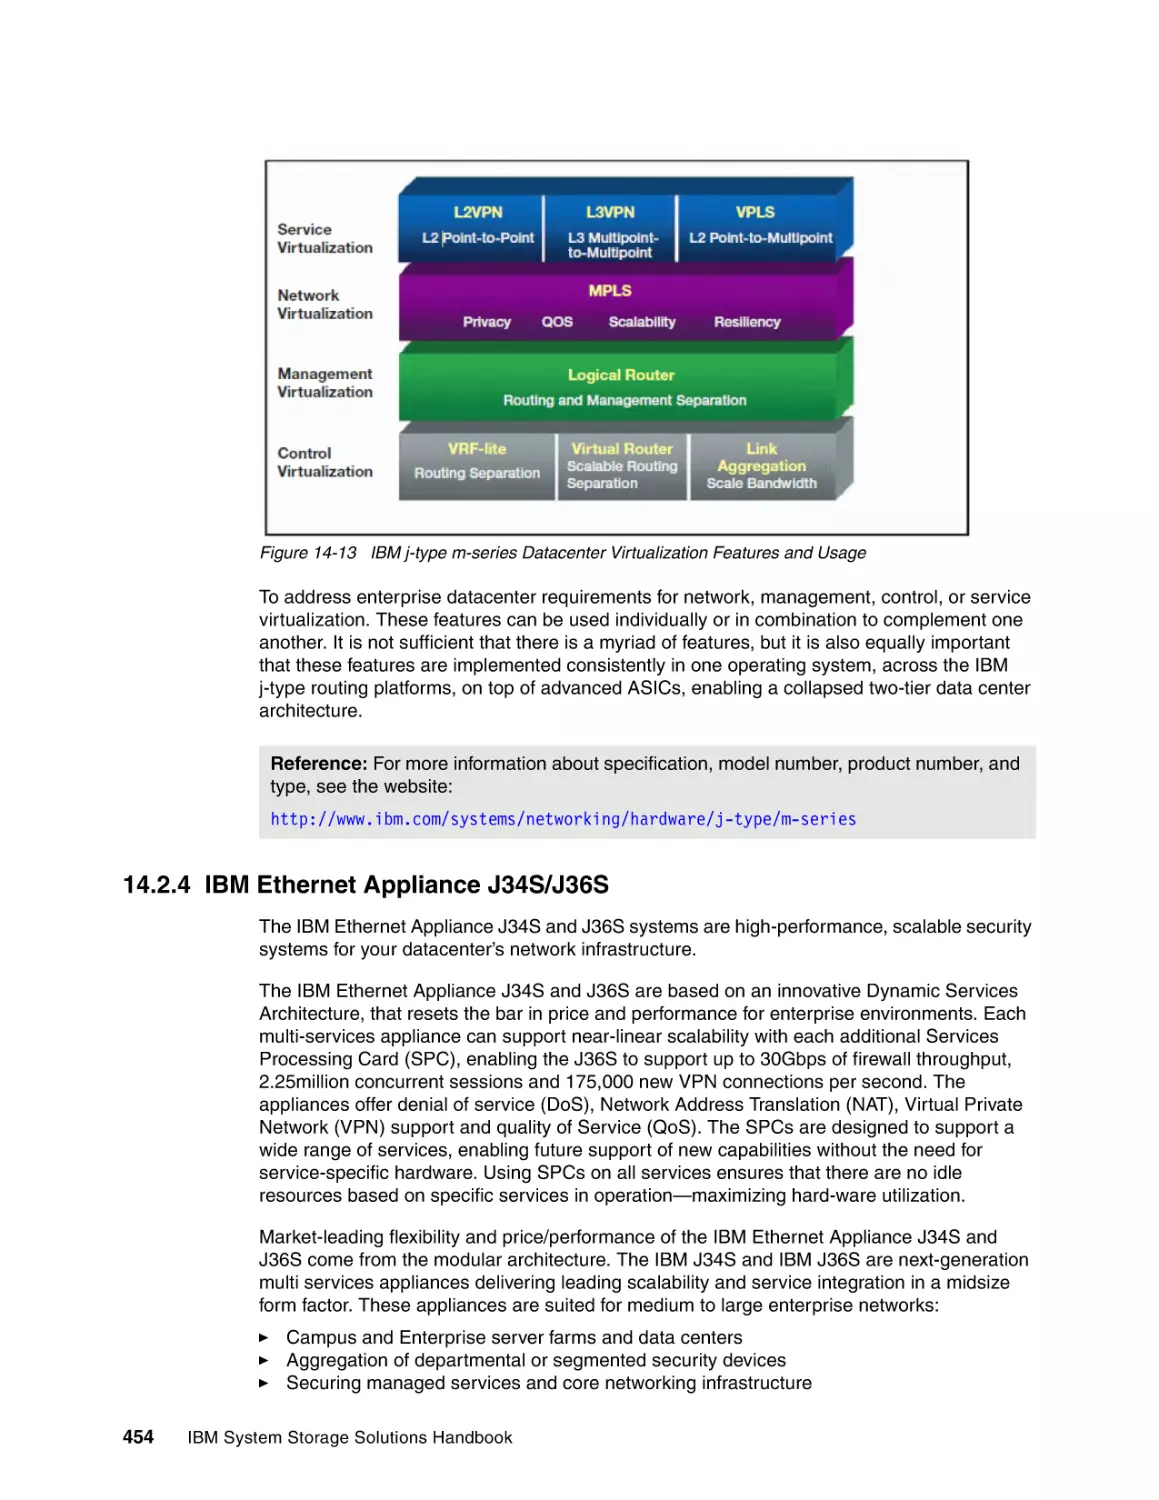 14.2.4 IBM Ethernet Appliance J34S/J36S